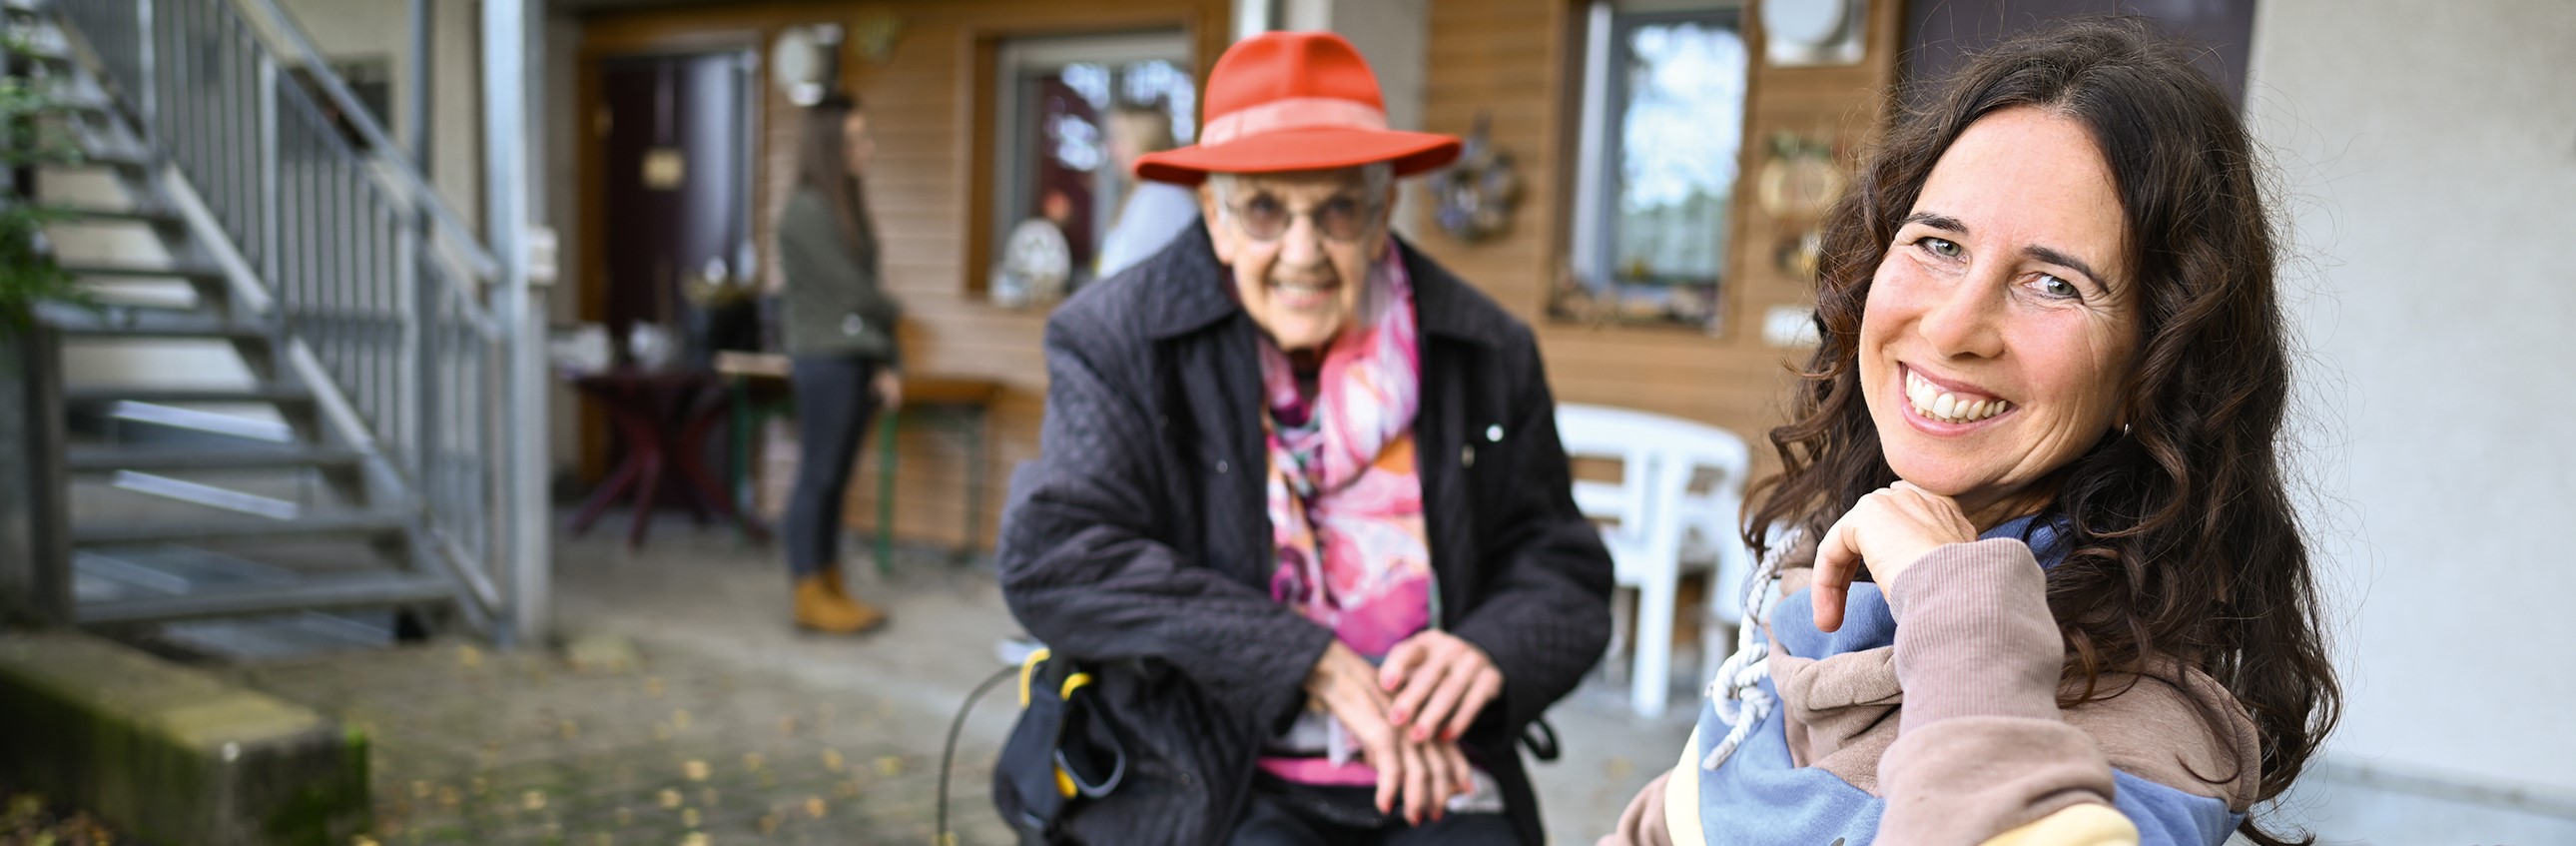 Das Bild zeigt eine junge Frau mit einer Rentnerin